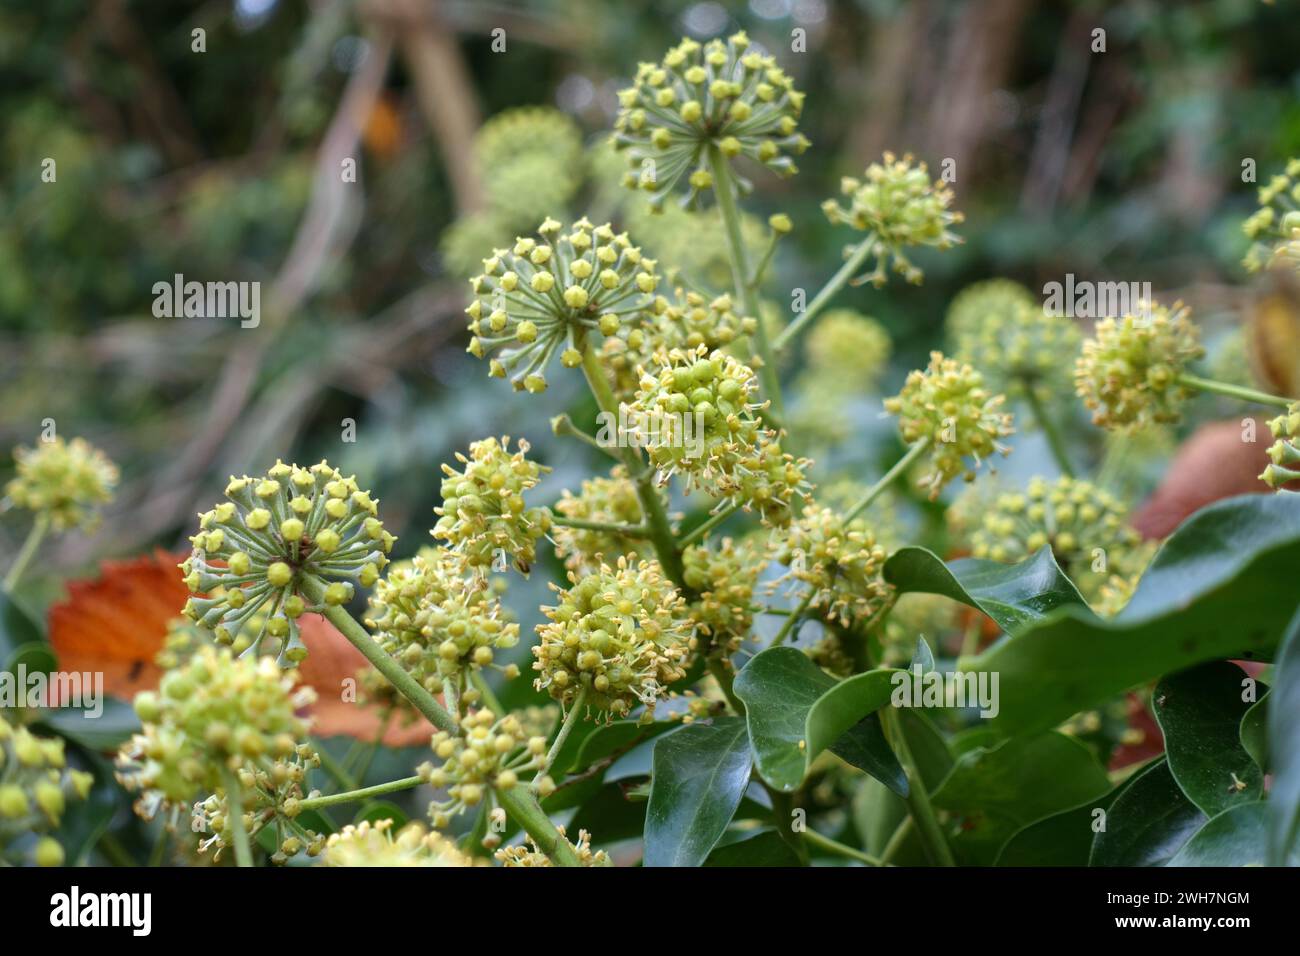 Efeu (Hedera Helix) grün-gelbe Blüten im Spätherbst, nützlich als späte Nahrung für Bestäuber wie Hummeln, Berkshire, November Stockfoto